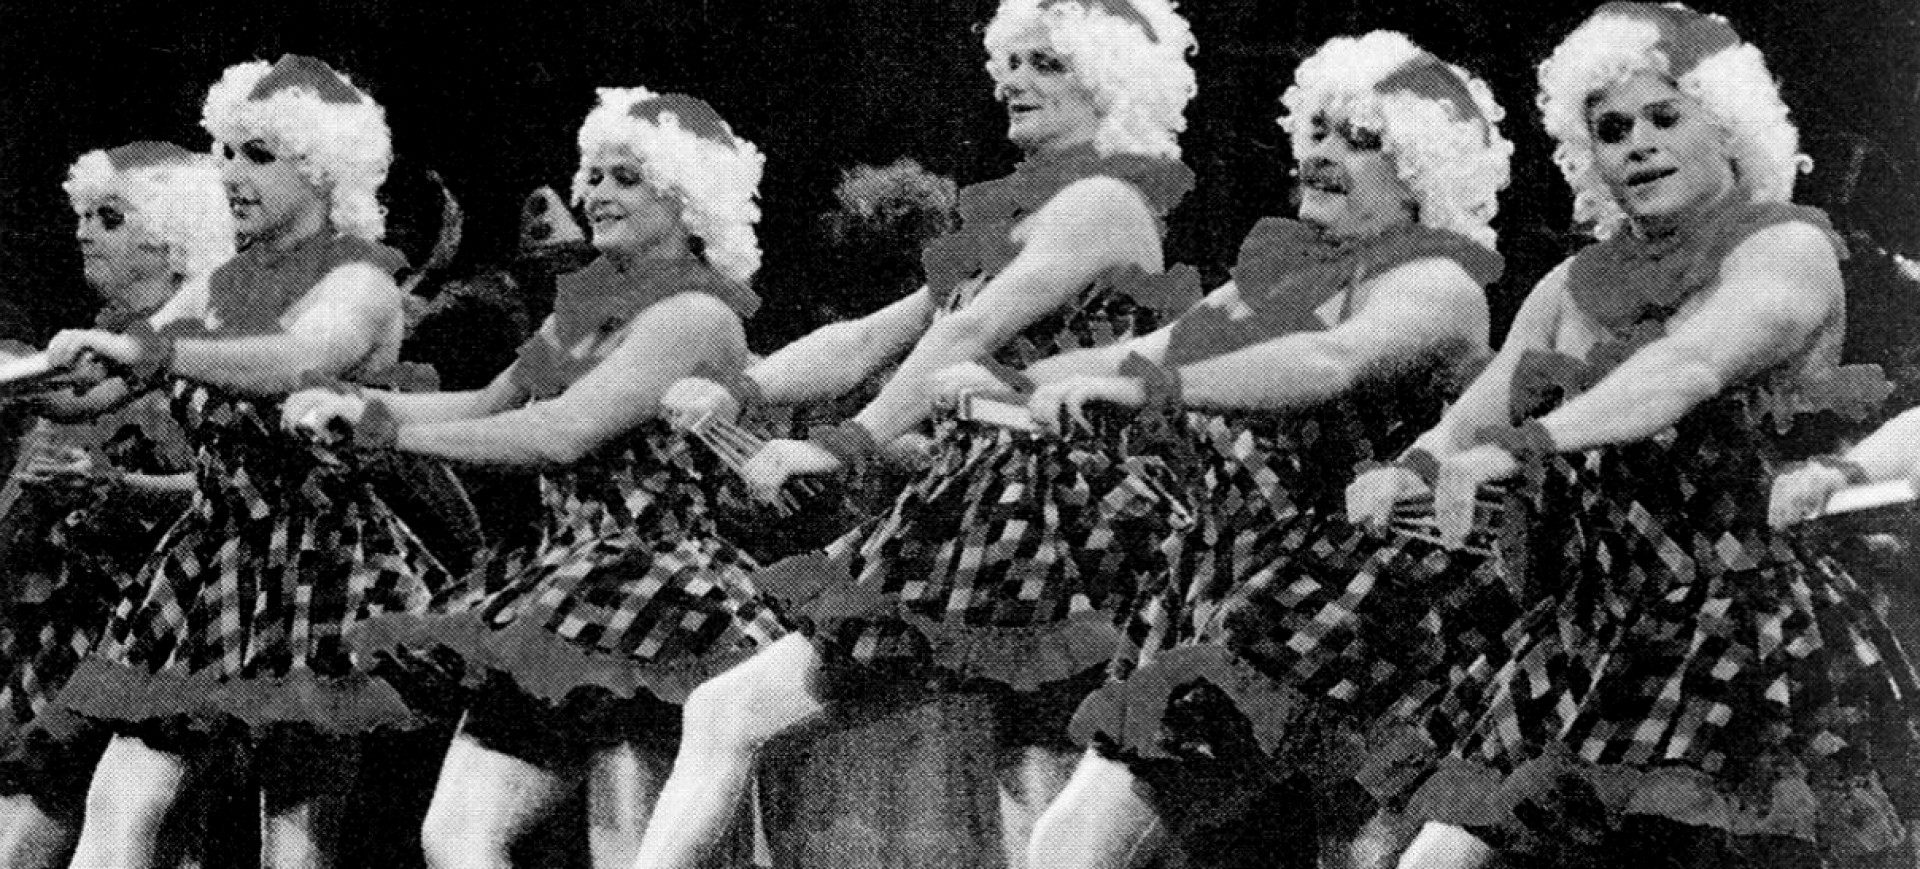 De jecke Wiever vum Heumarkt - Divertissementchen 1991 - Ballett tanzt